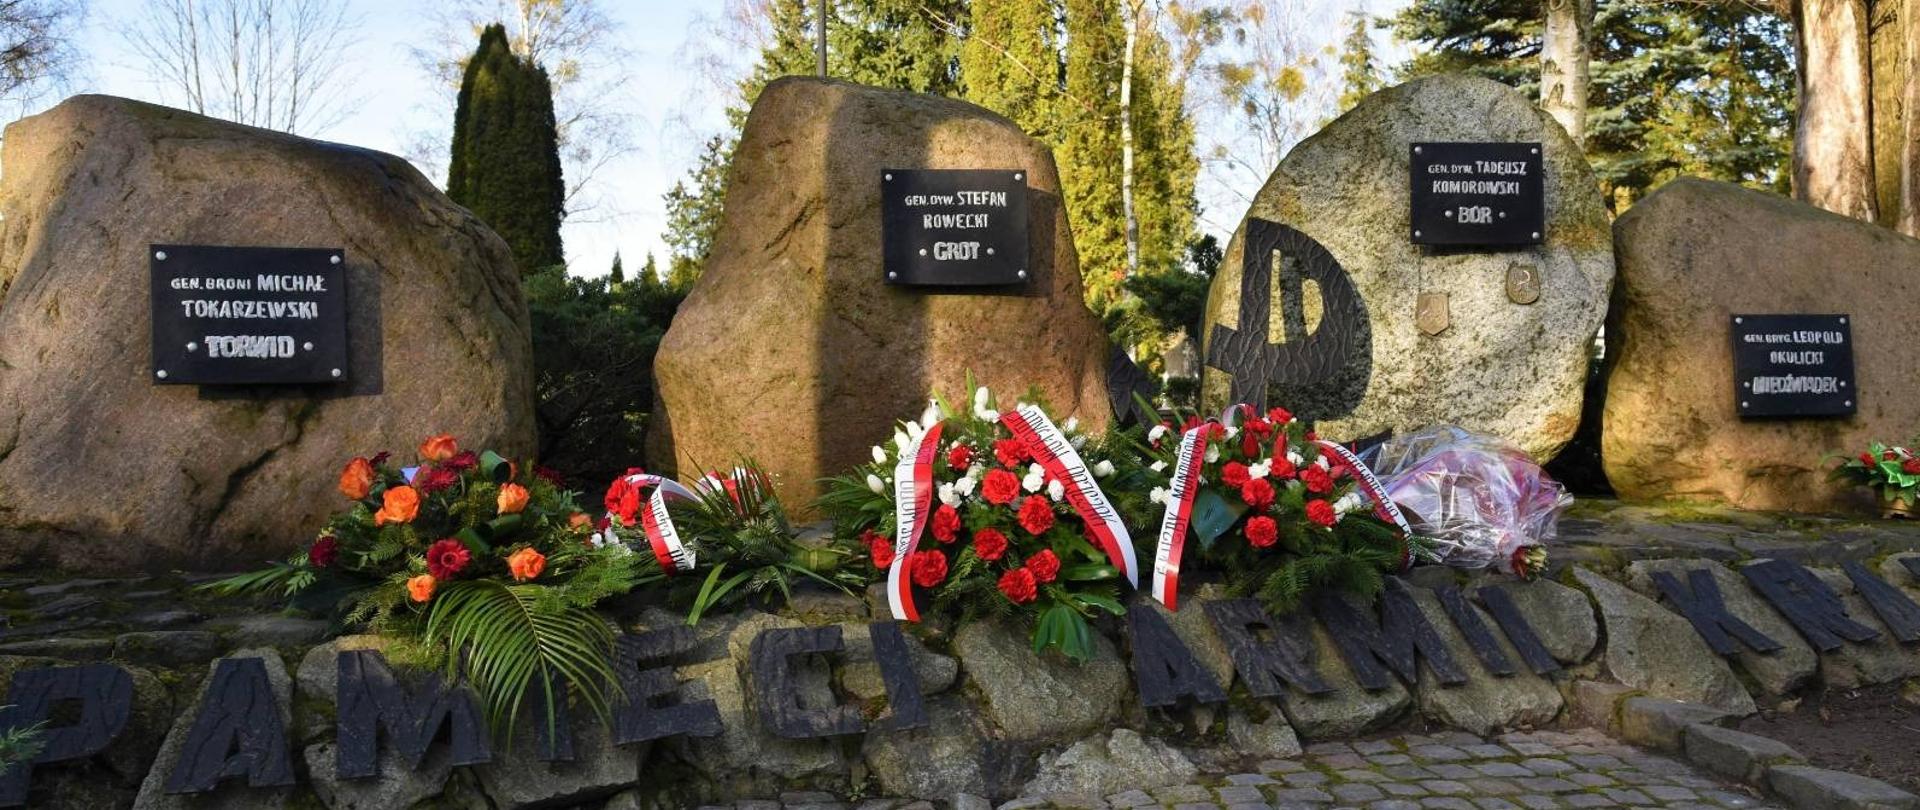 Pod Pomnikiem (4 obeliski z tablicami) leżą biało-czerwone wieńce i wiązanki kwiatów 